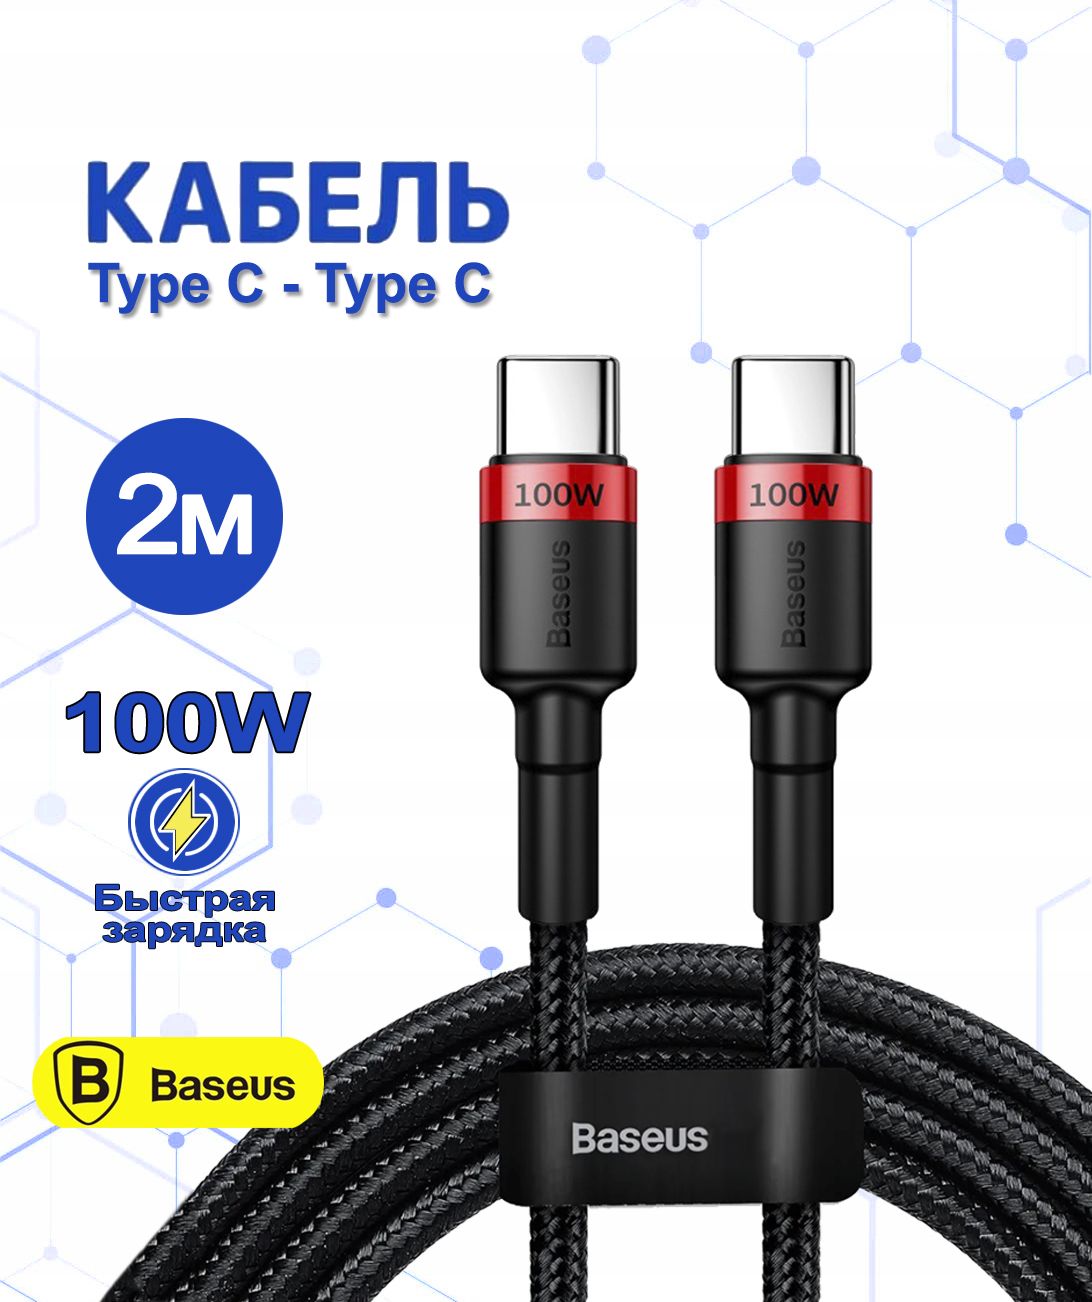 BaseusКабельдлямобильныхустройствUSBType-C/USBType-C,2м,черный,красный